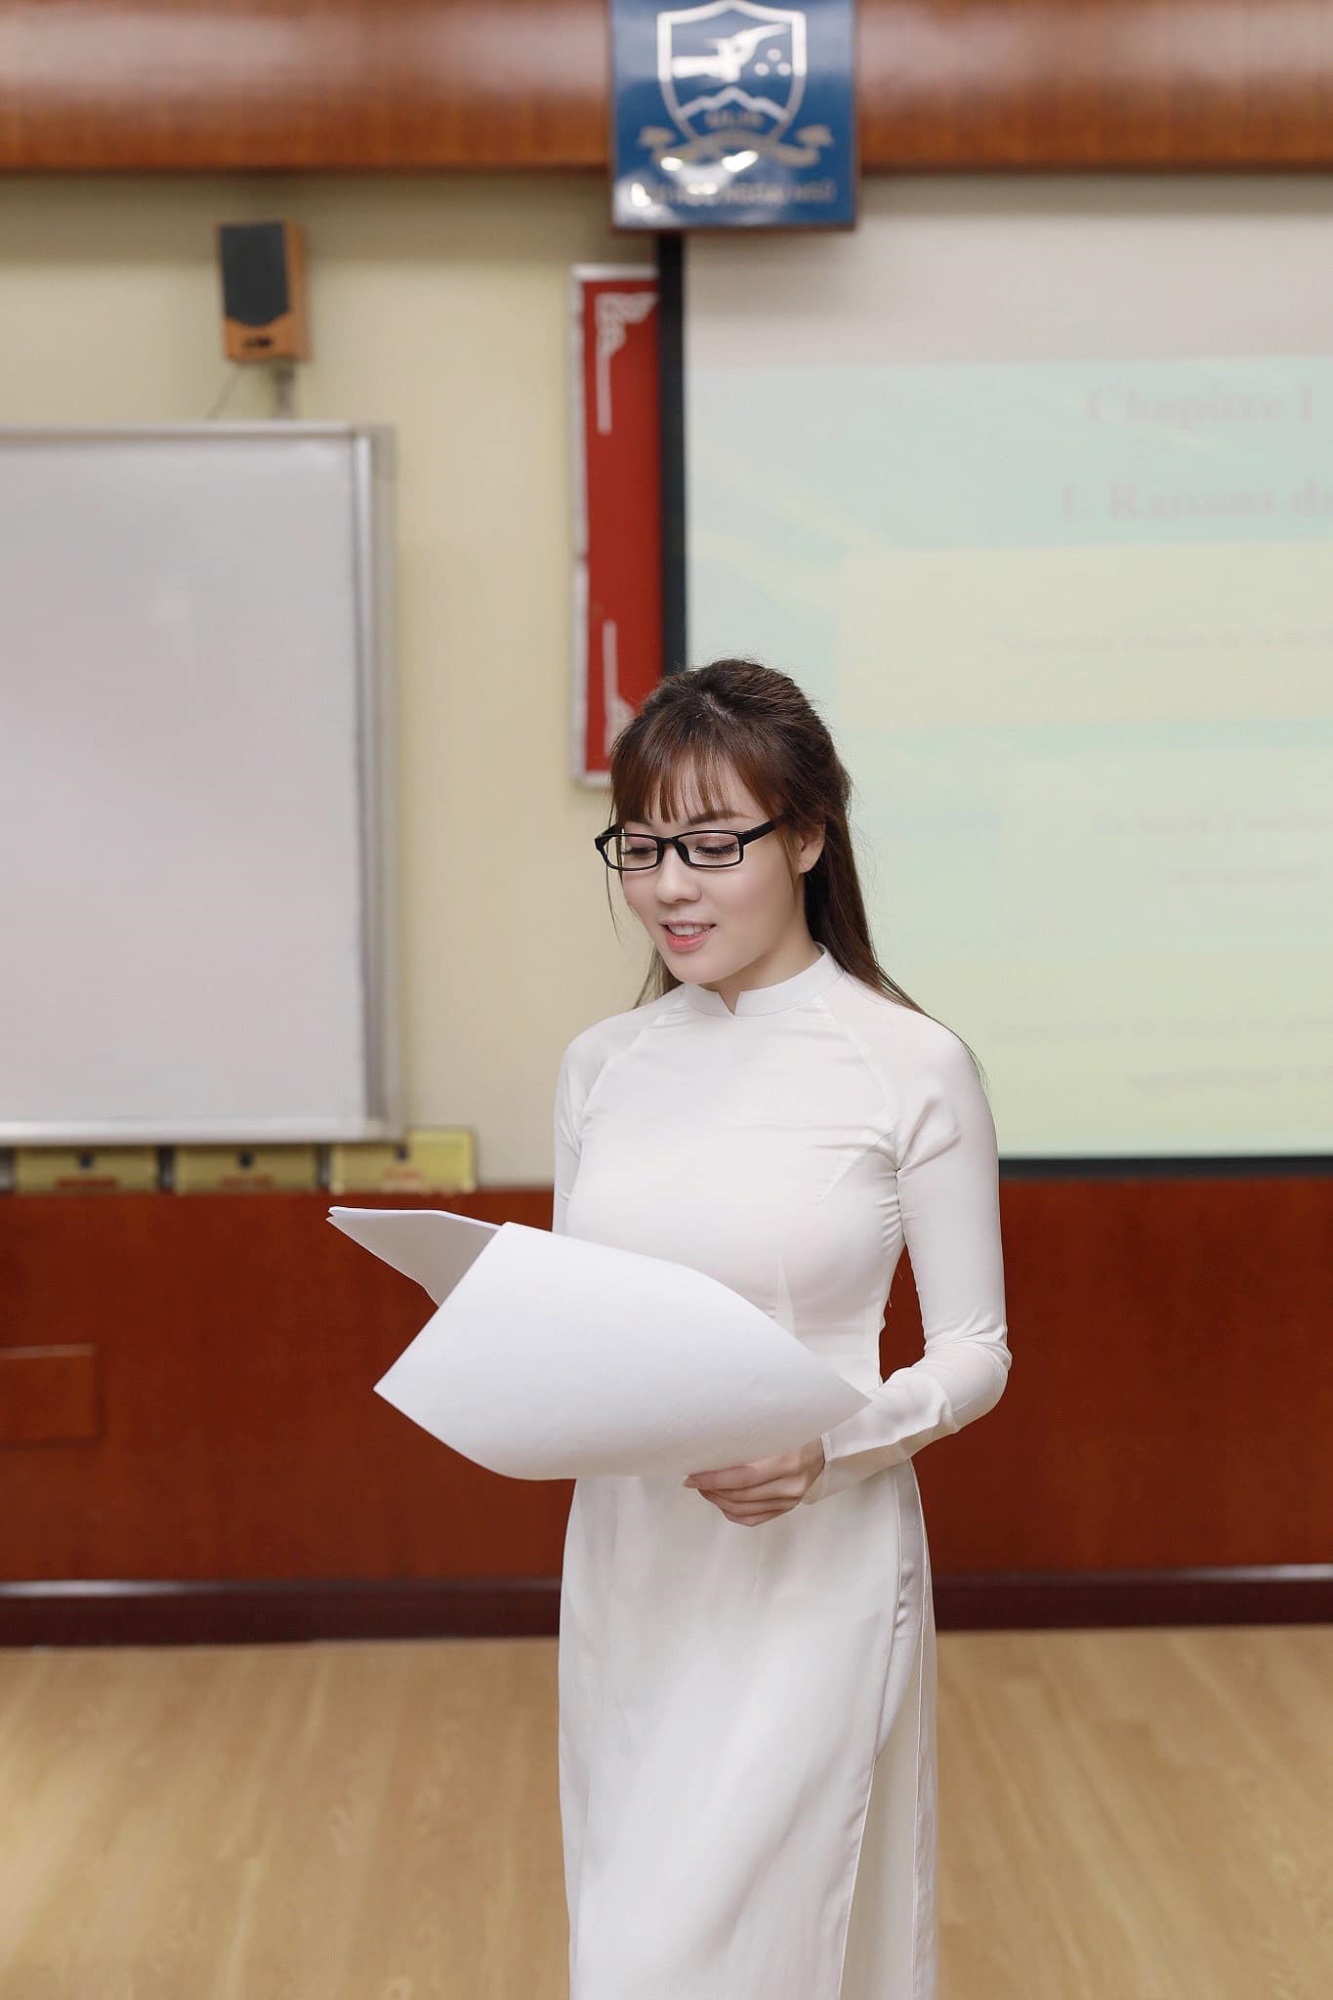 Đi tiêm vắc xin, nữ giảng viên ở Hà Nội khiến dân tình 'tụt huyết áp' vì vòng 1 ngoại cỡ - Ảnh 7